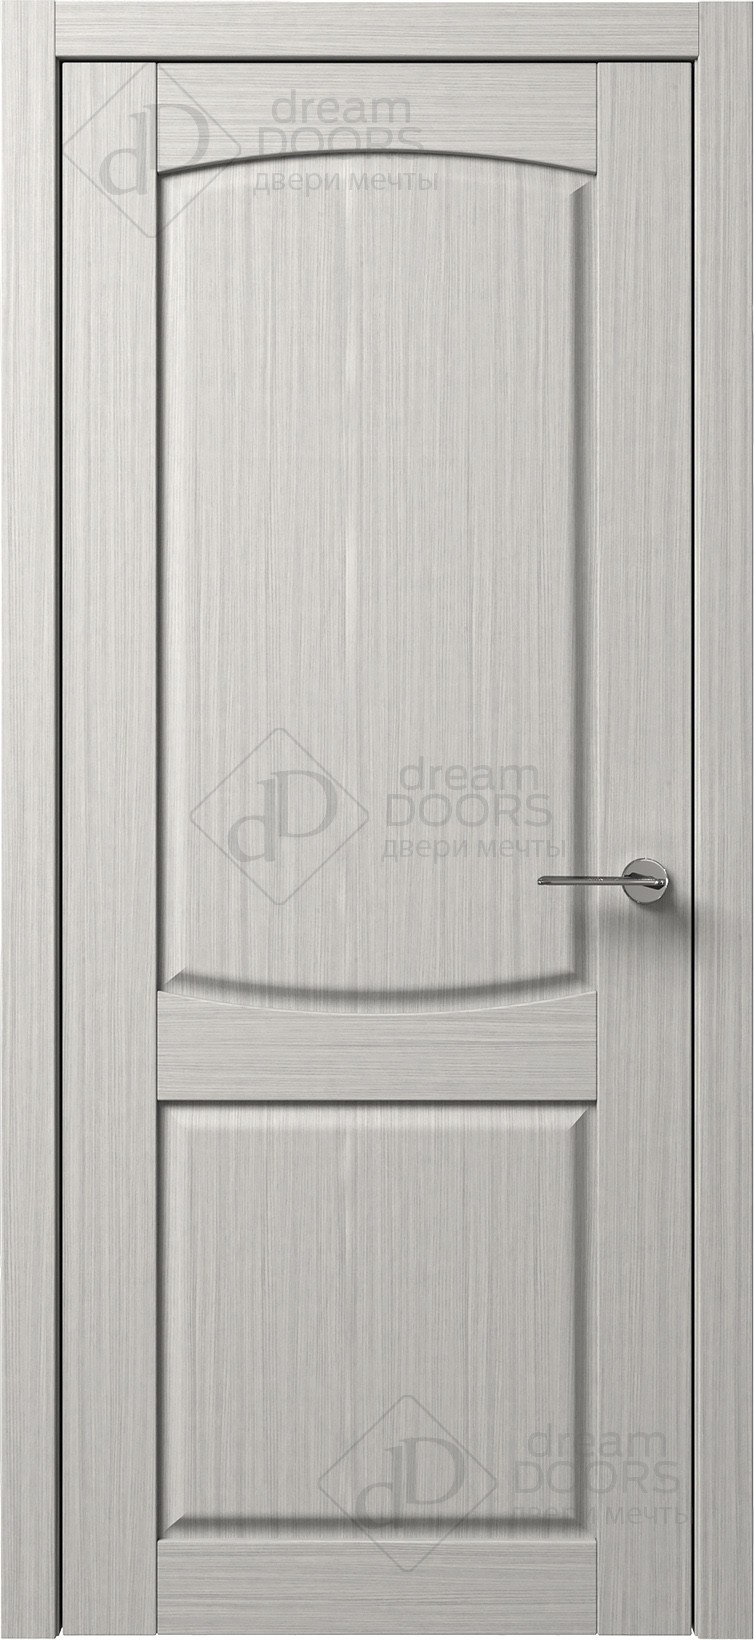 Dream Doors Межкомнатная дверь B2-3, арт. 5549 - фото №1